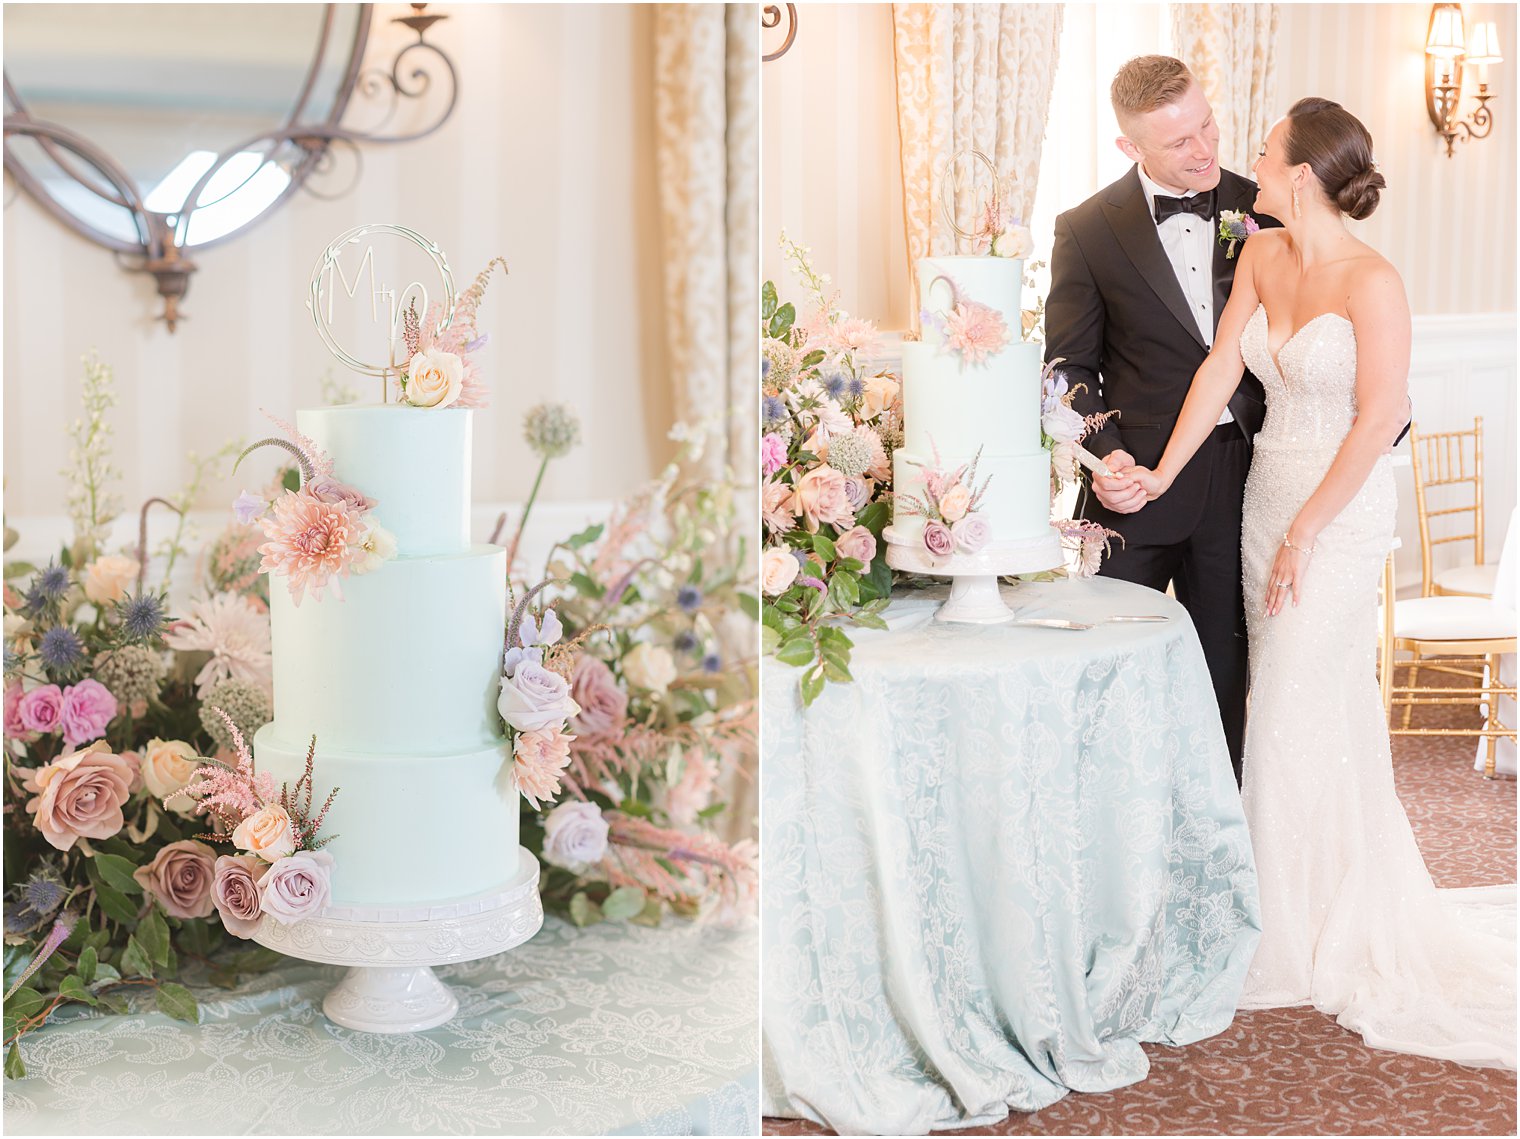 newlyweds cut tiered wedding cake sitting on blue table cloth at Mallard Island Yacht Club